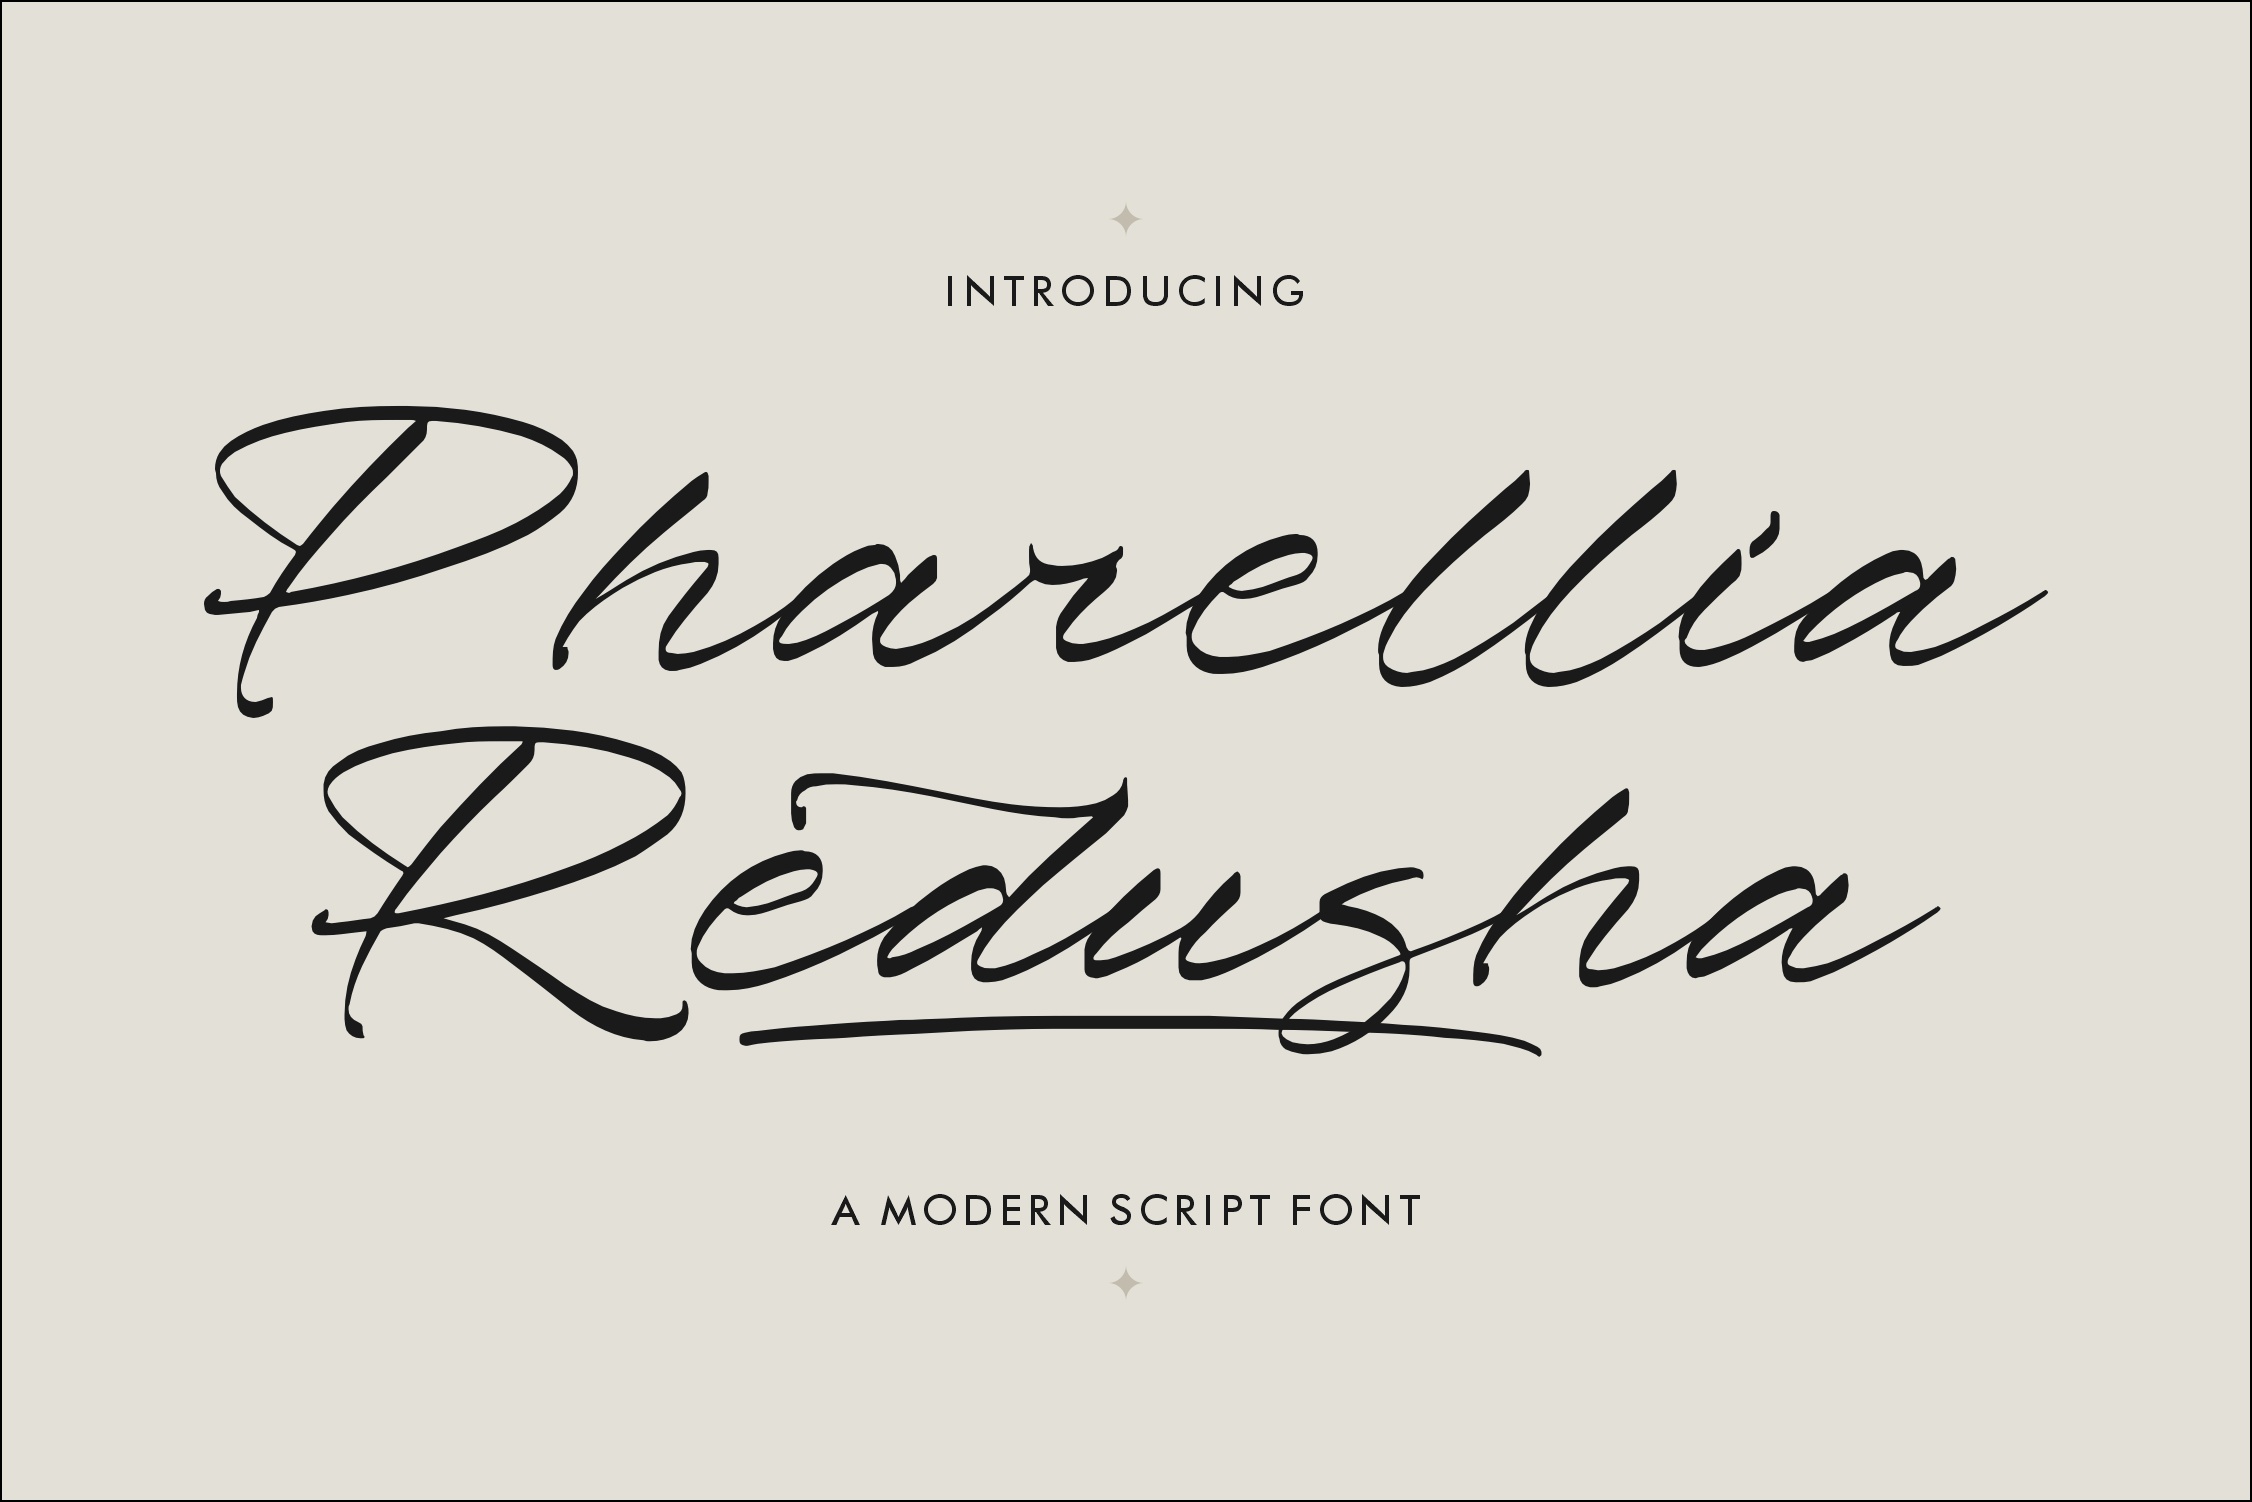 Пример шрифта Pharellia Redusha